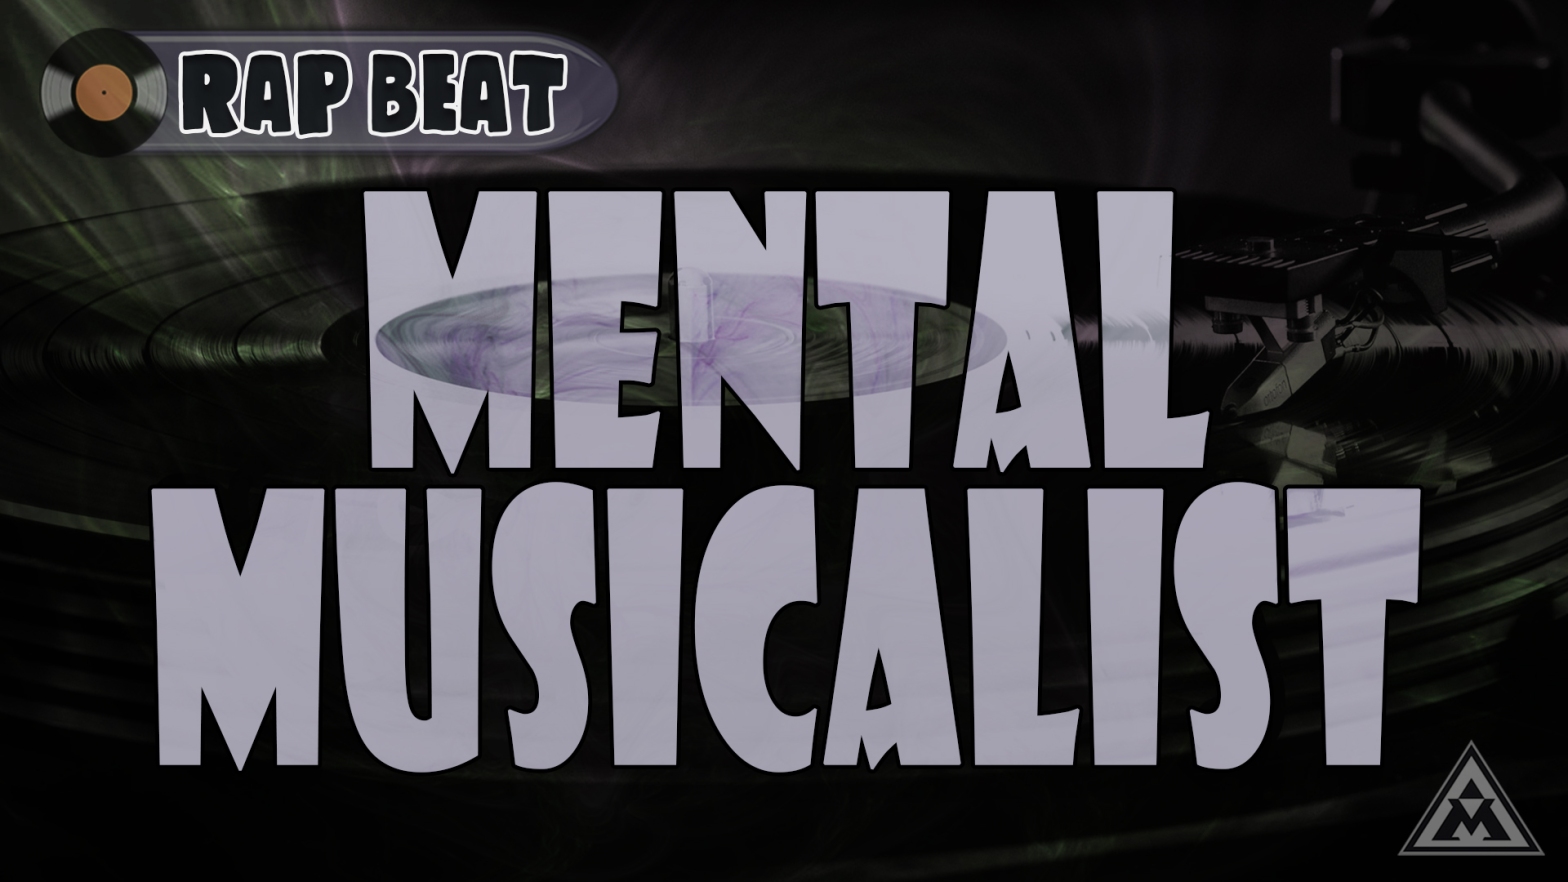 Mental Musicalist - Hip Hop Instrumental "Rap Music" NEW BEAT!